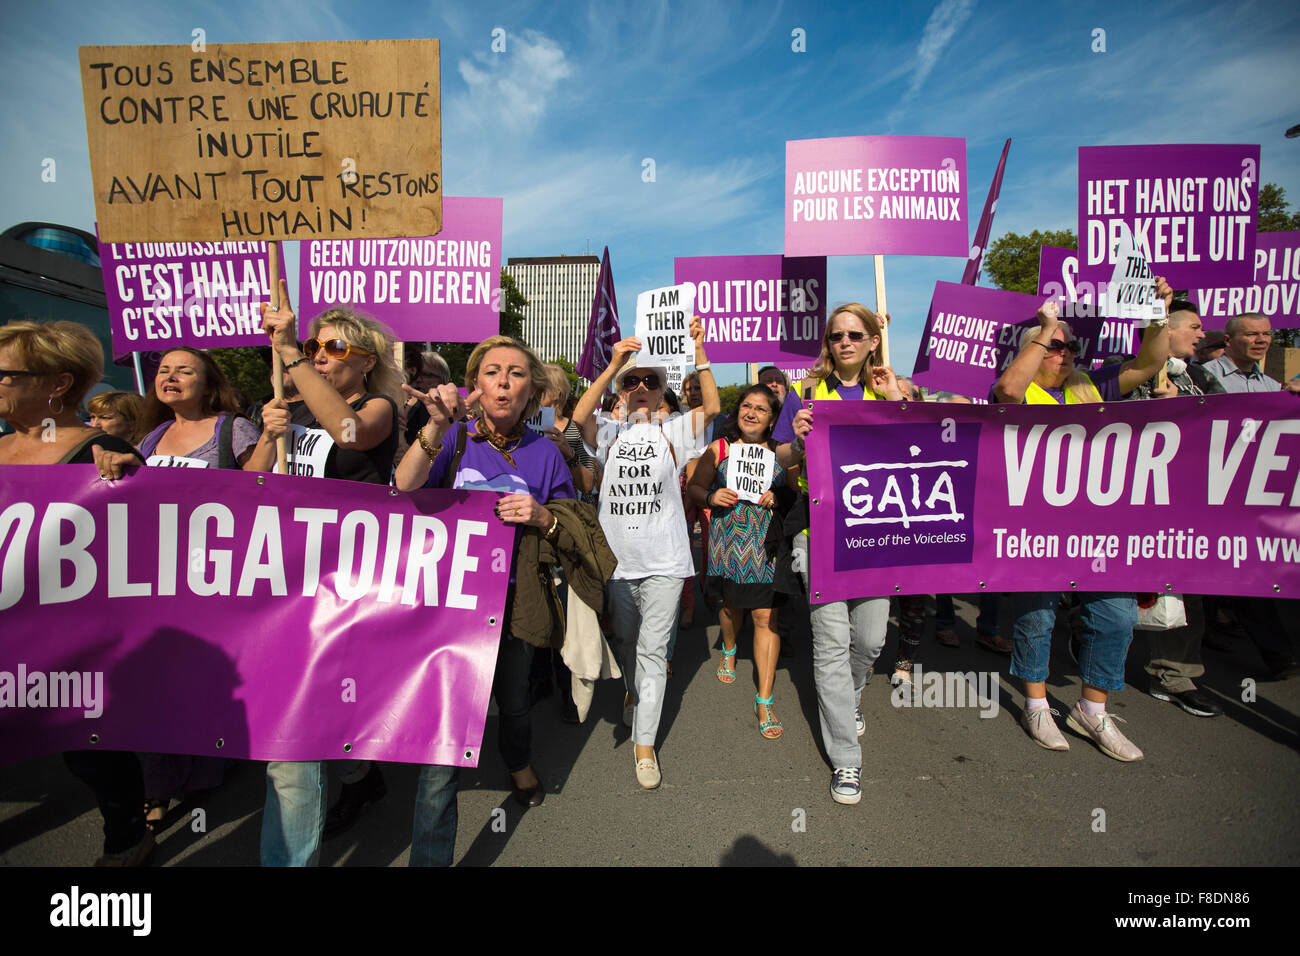 Gaia belge de protestation des militants dans les rues de Bruxelles Banque D'Images